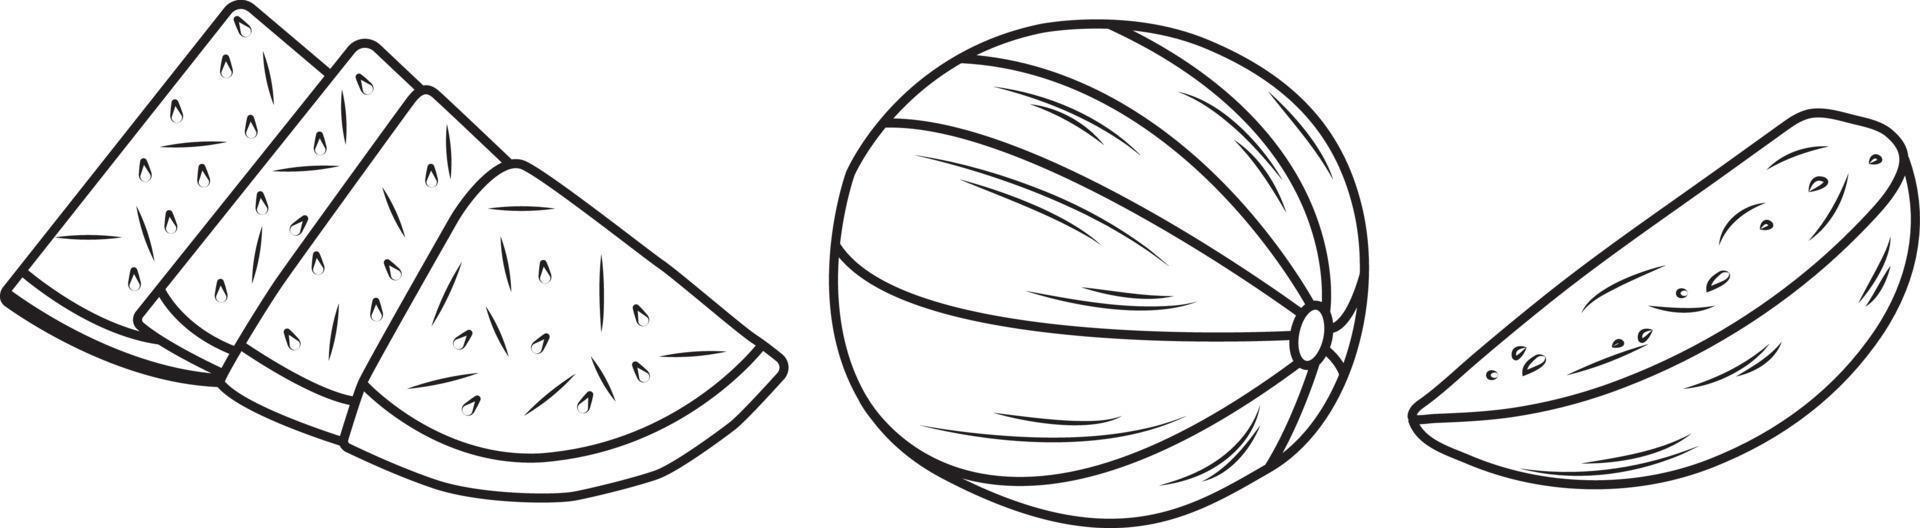 Wassermelonenscheibe, Halb- und Vollvektorgekritzel auf weißem Hintergrund vektor